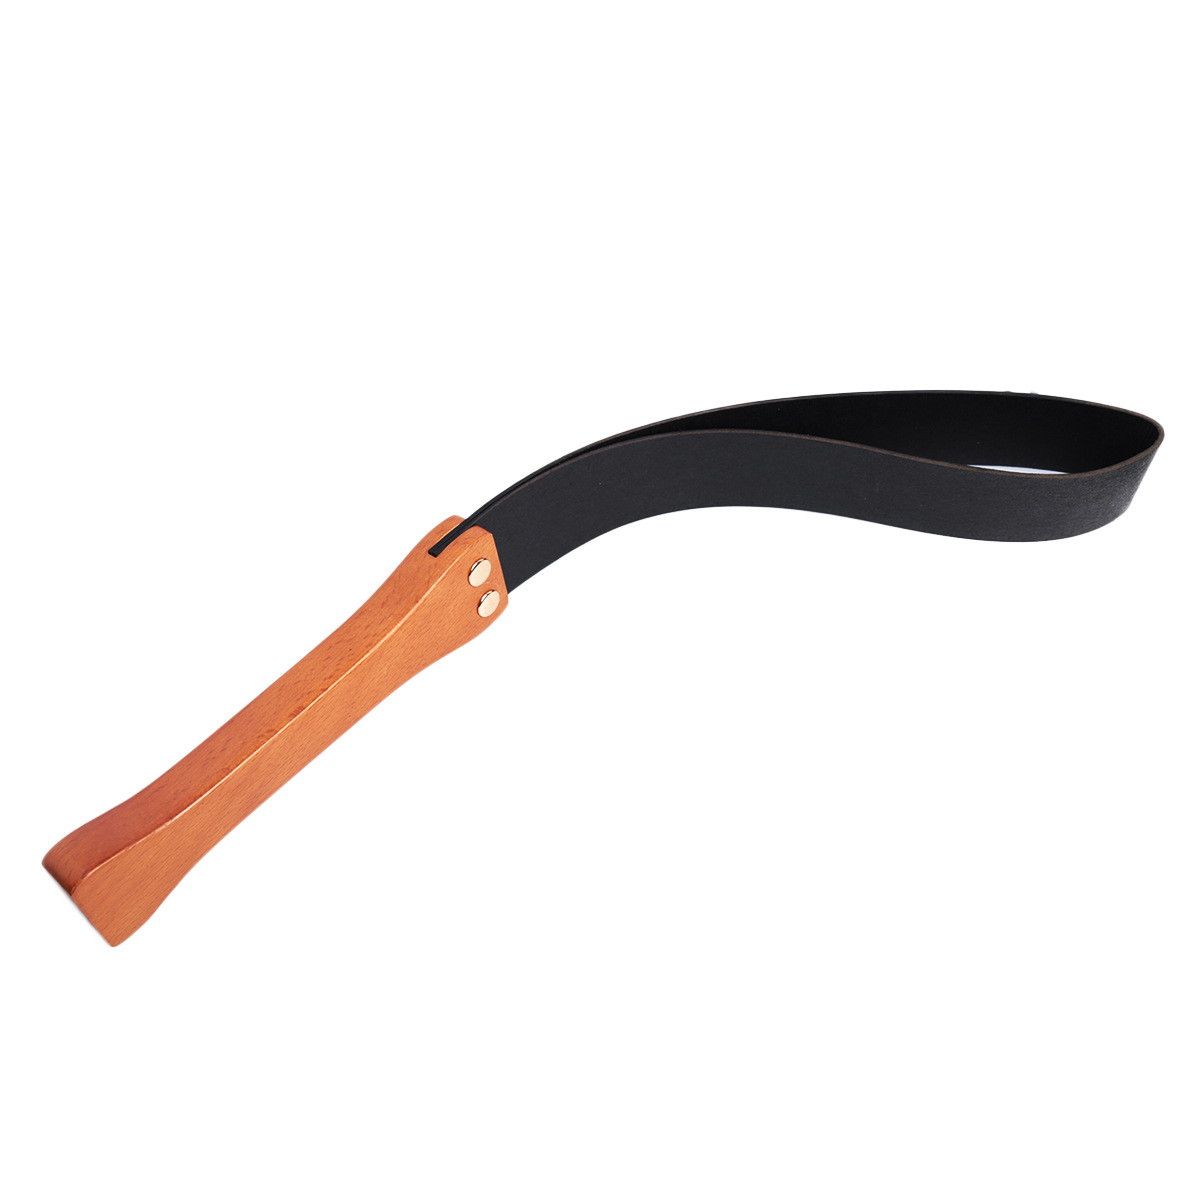 Solid wood handle, double PU leather, racket